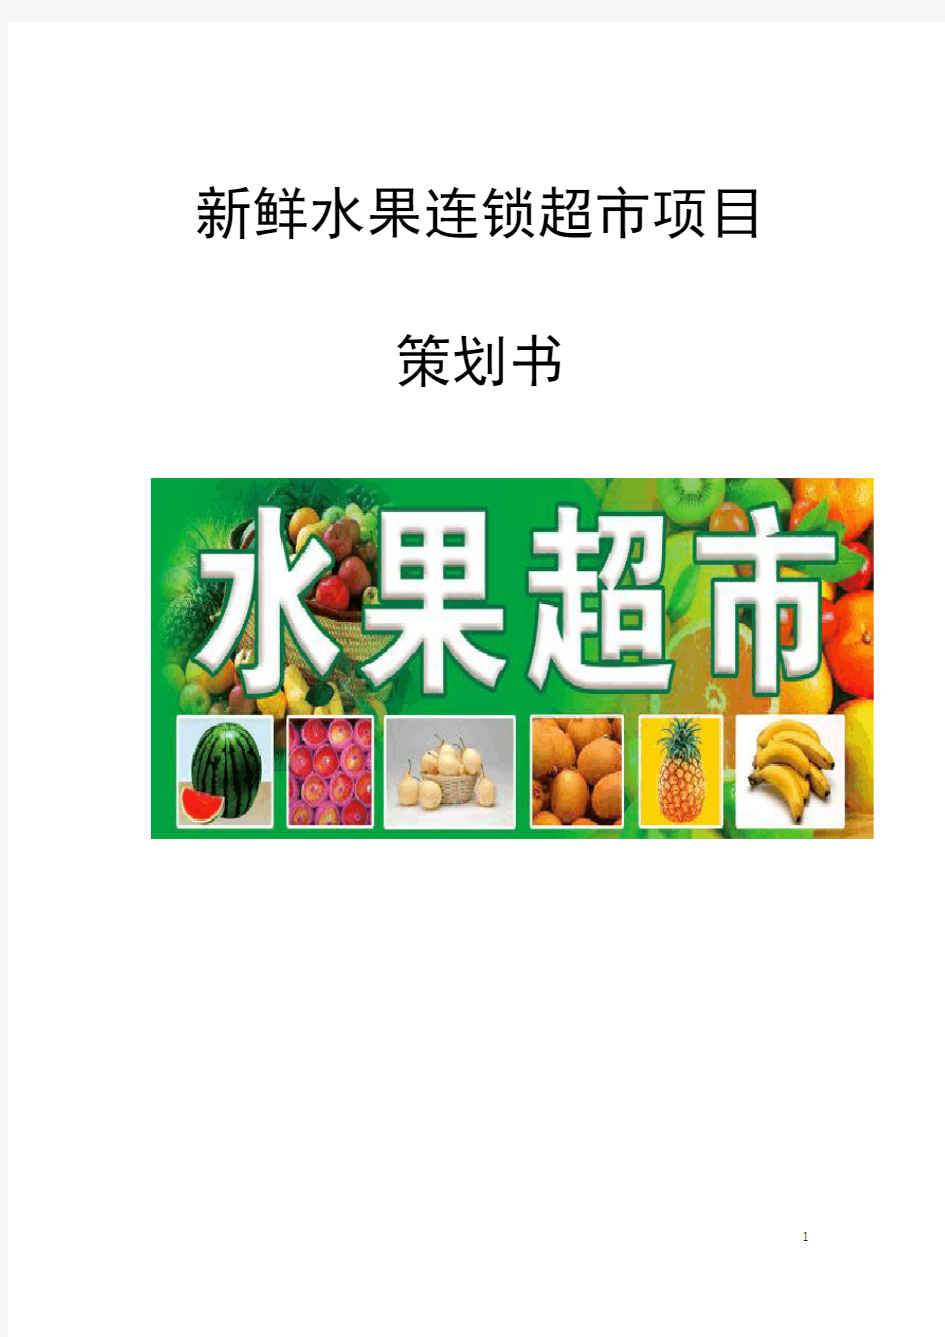 最新版新鲜水果连锁超市项目策划书